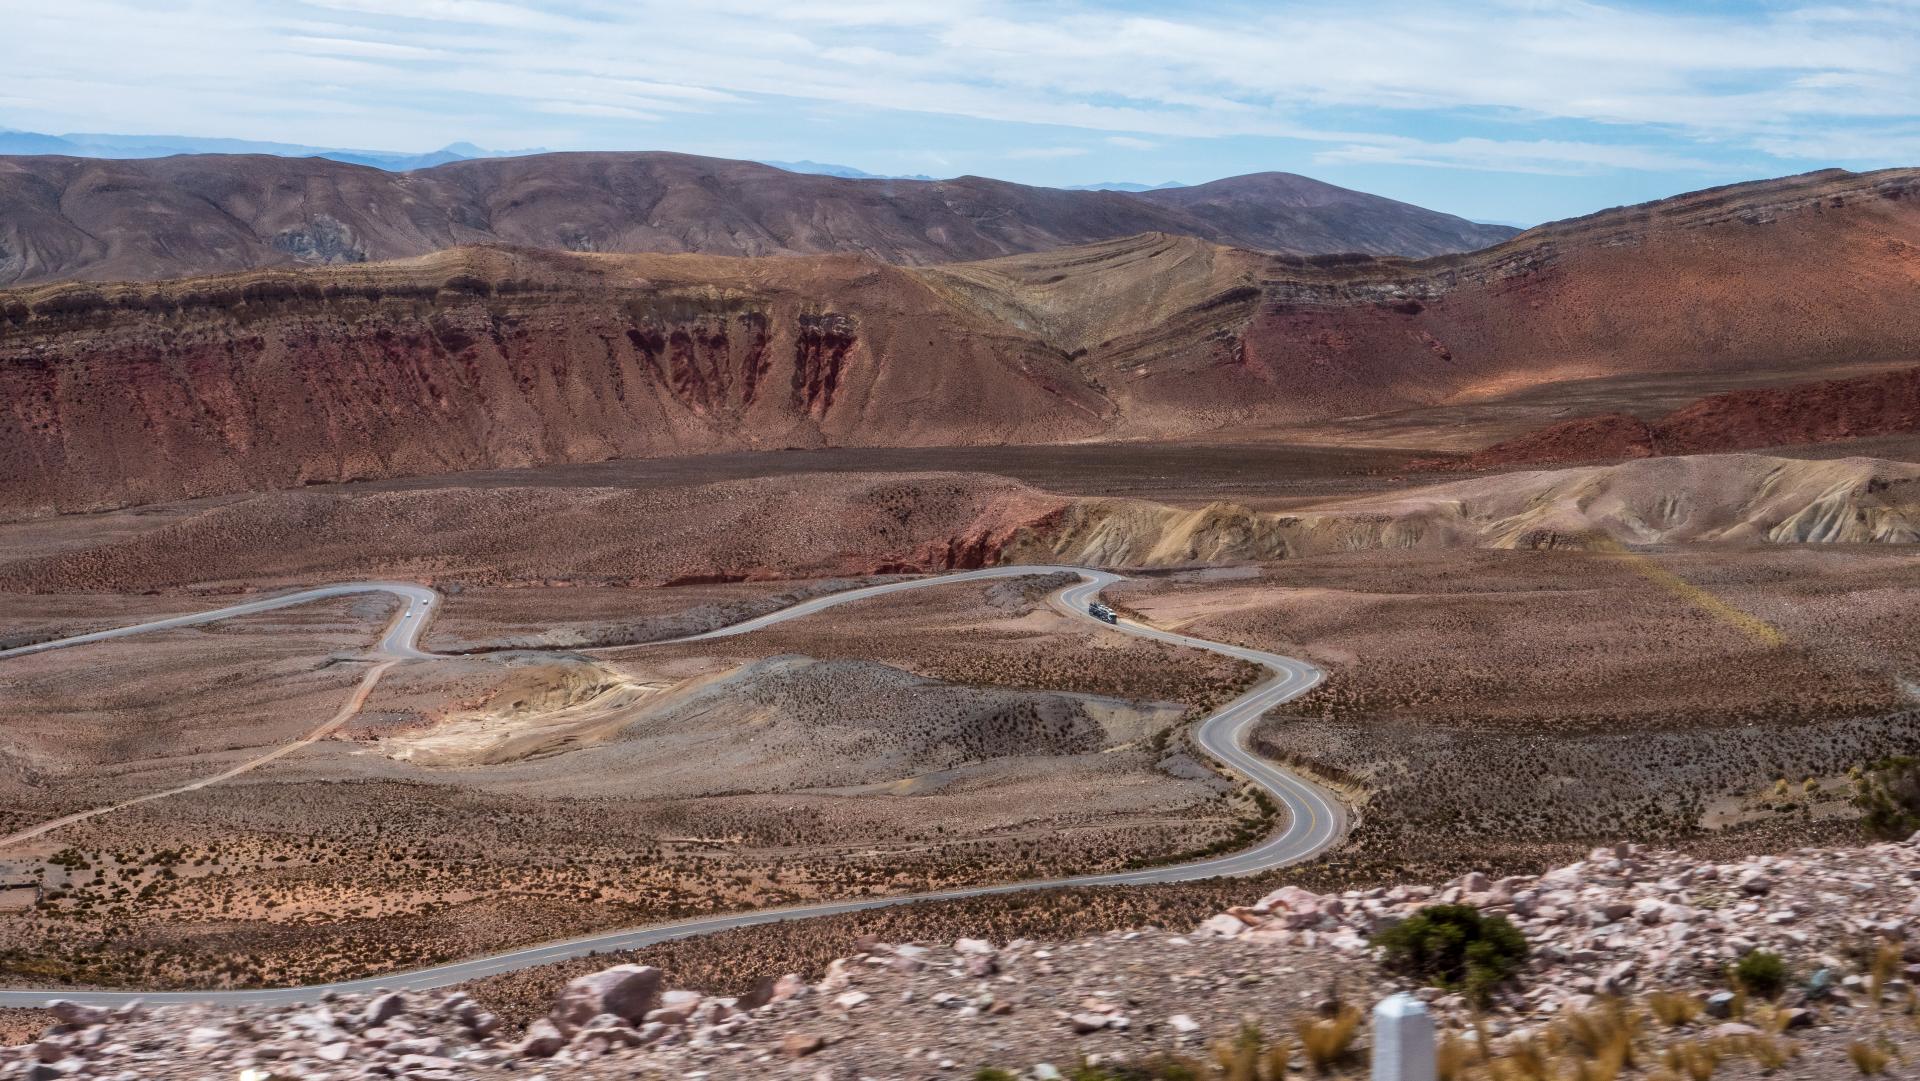 Entdecken Sie die Atacama Wüste in Chile hautnah auf einer Rundreise durch die Region